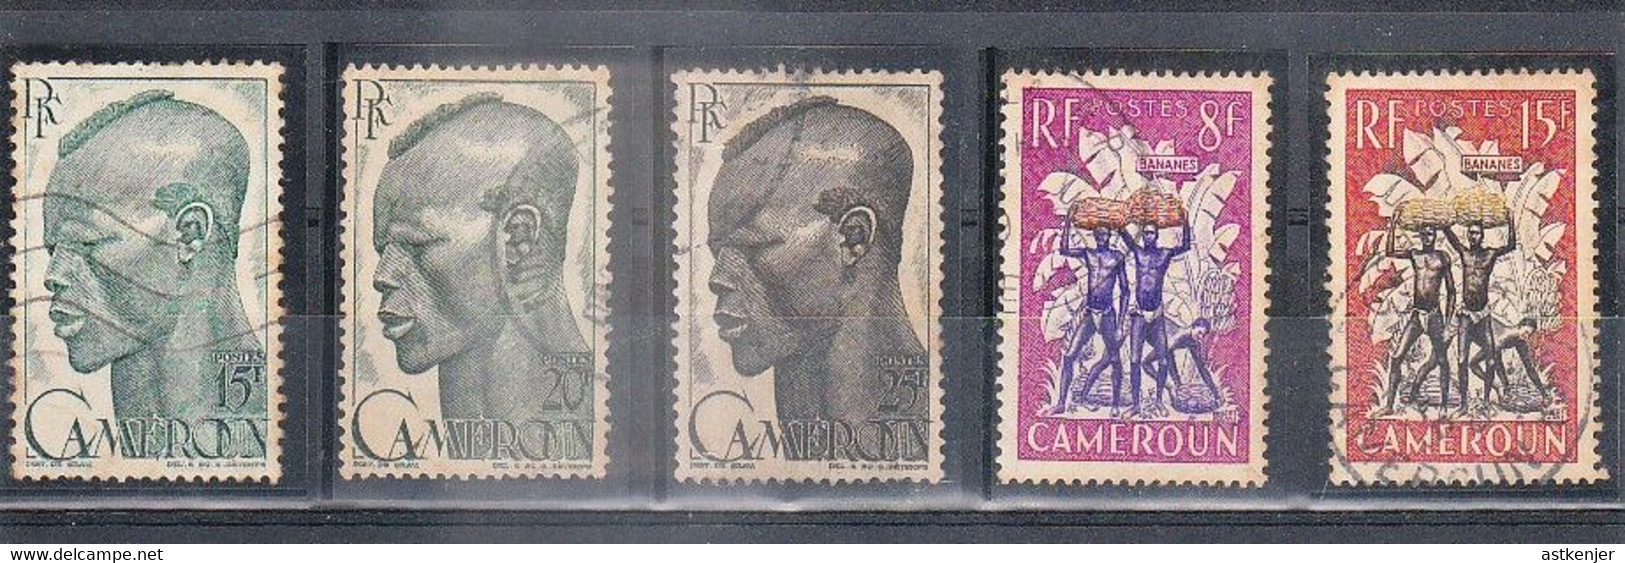 LOT Petite collection des Anciennes colonies françaises (environ 60 timbres........) - A SAISIR